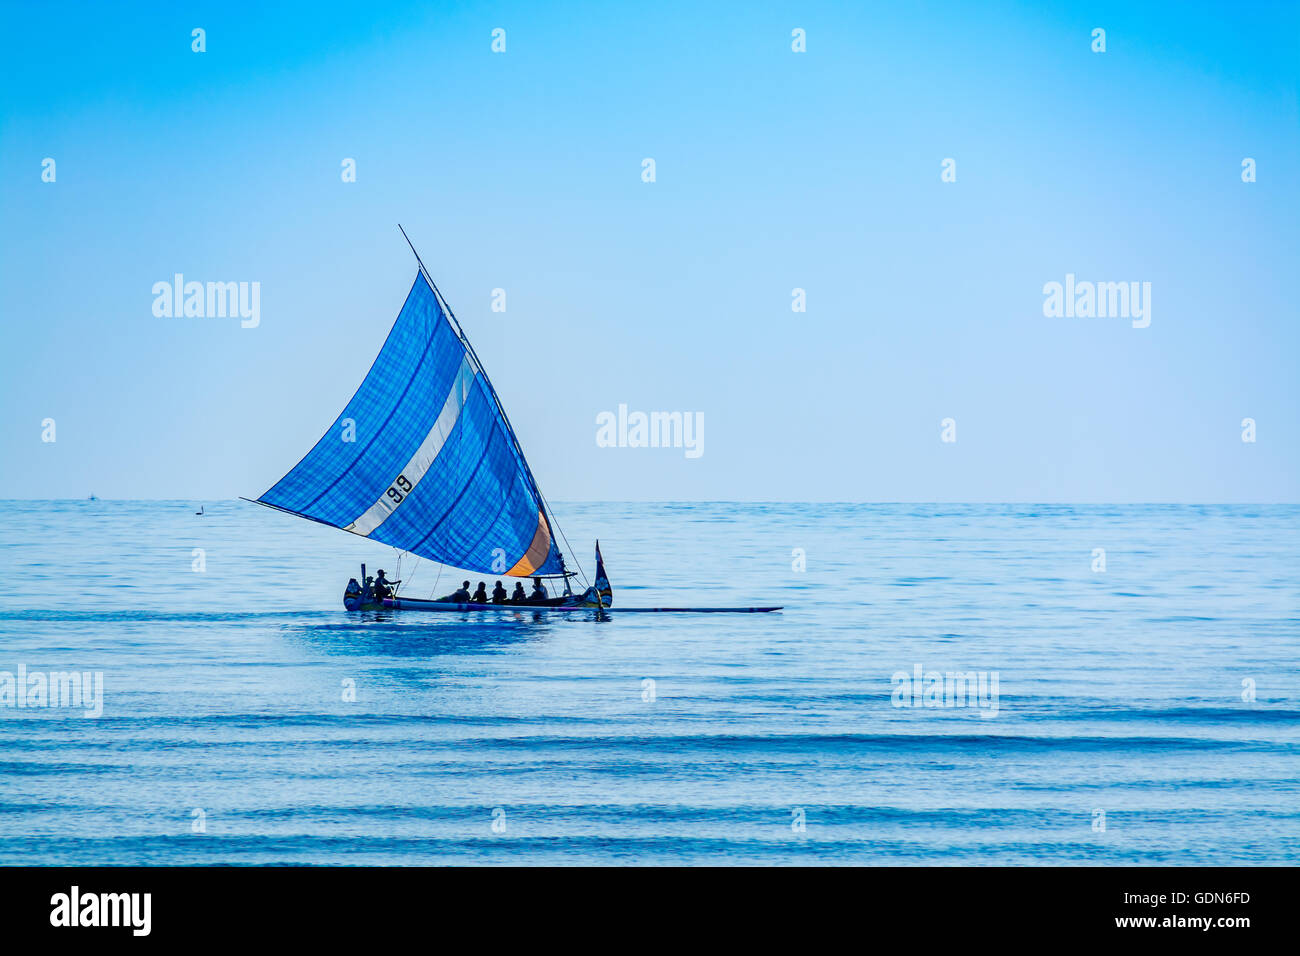 Canoa a vela immagini e fotografie stock ad alta risoluzione - Alamy